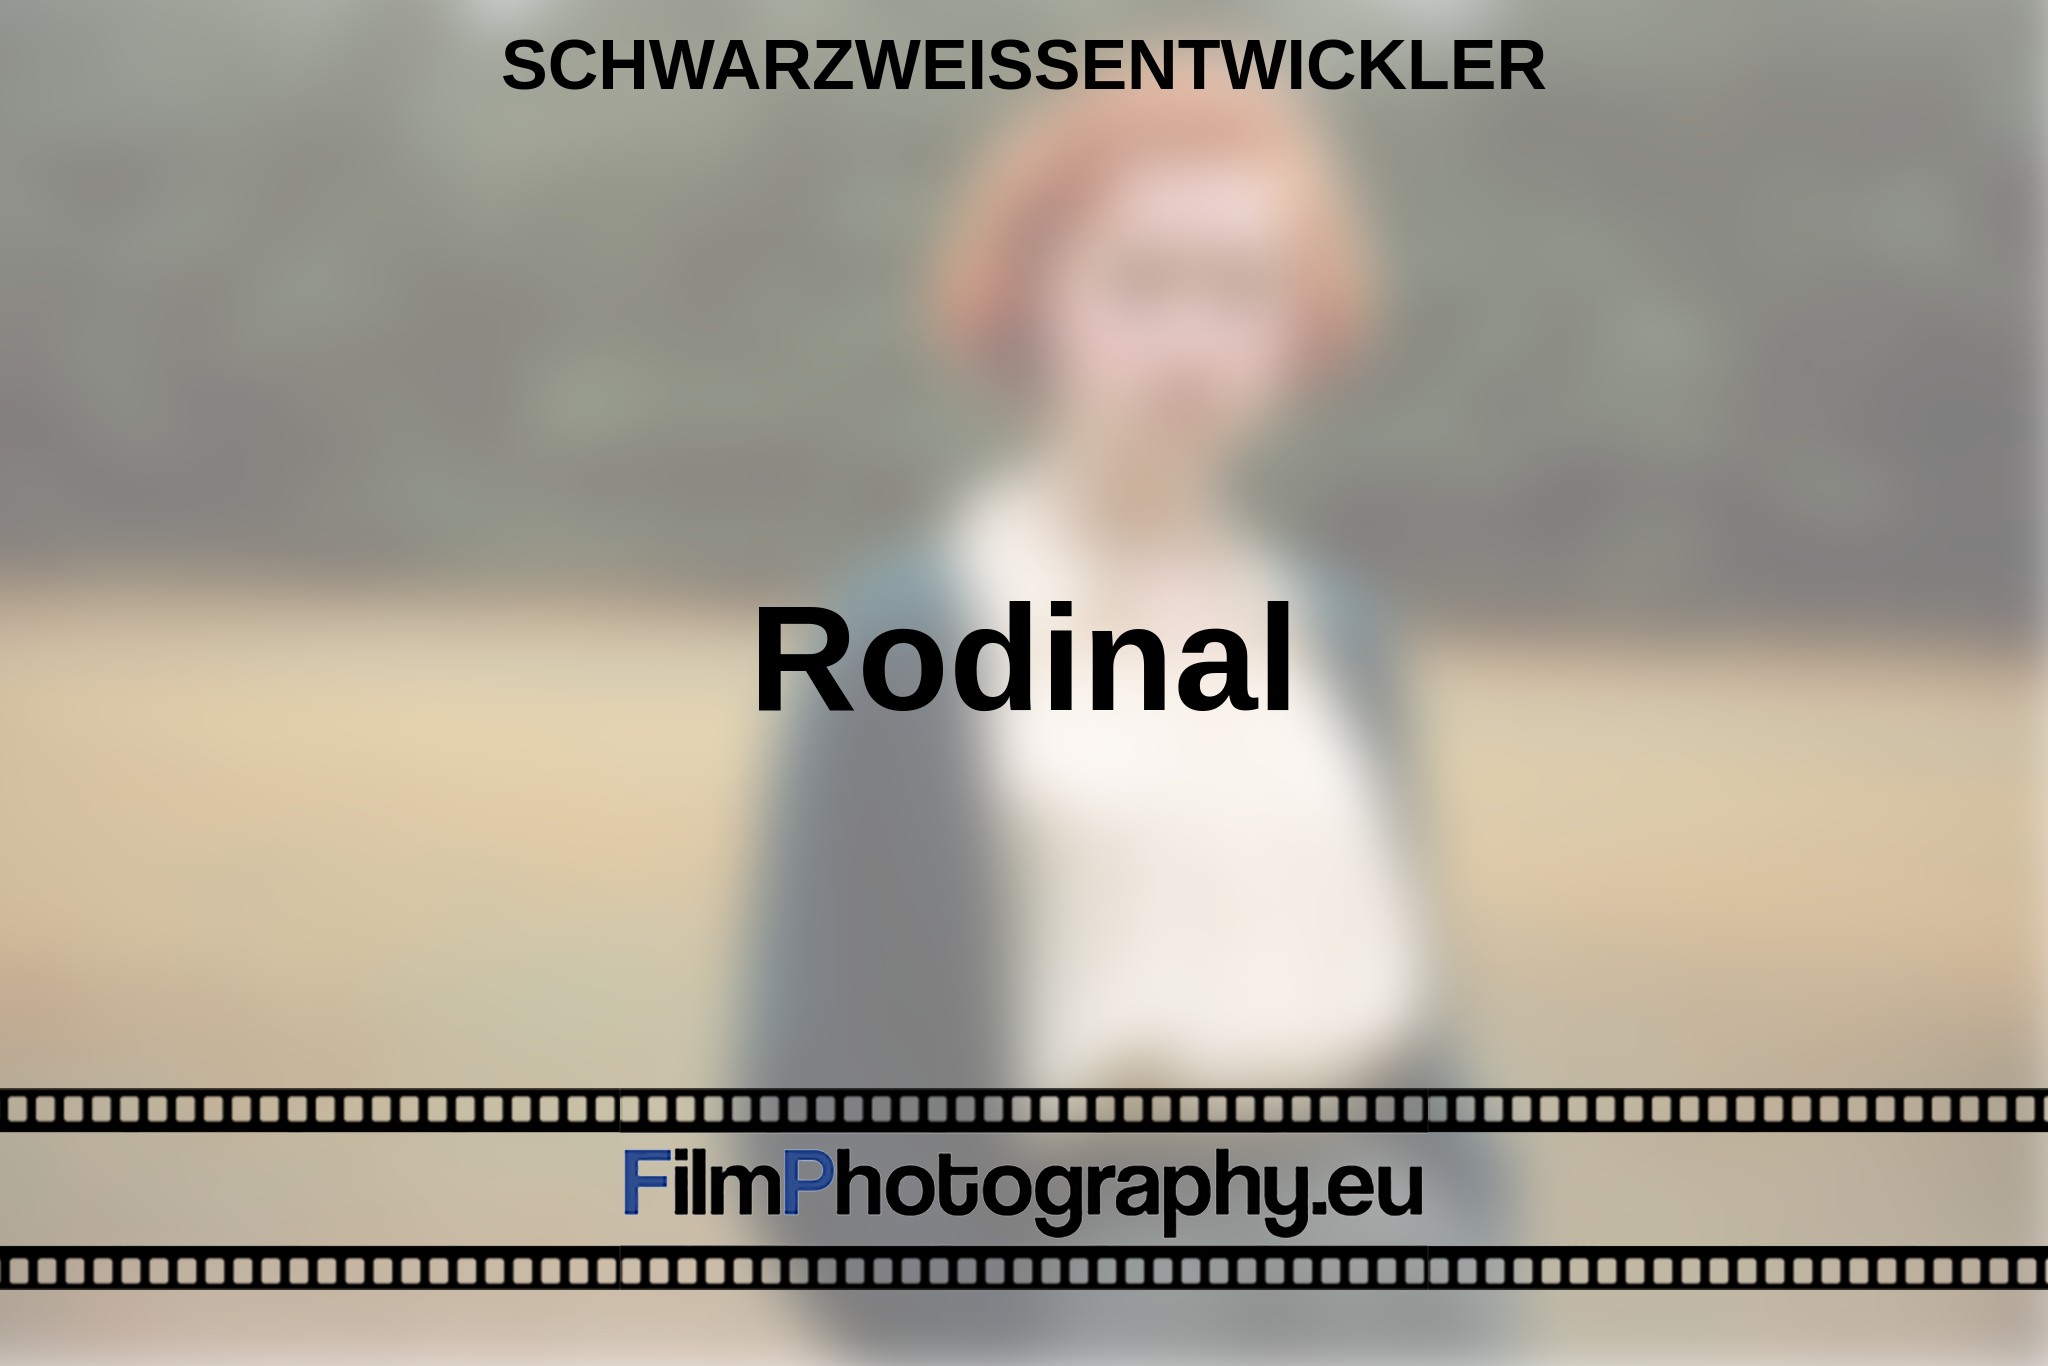 rodinal-schwarzweißentwickler-bnv.jpg